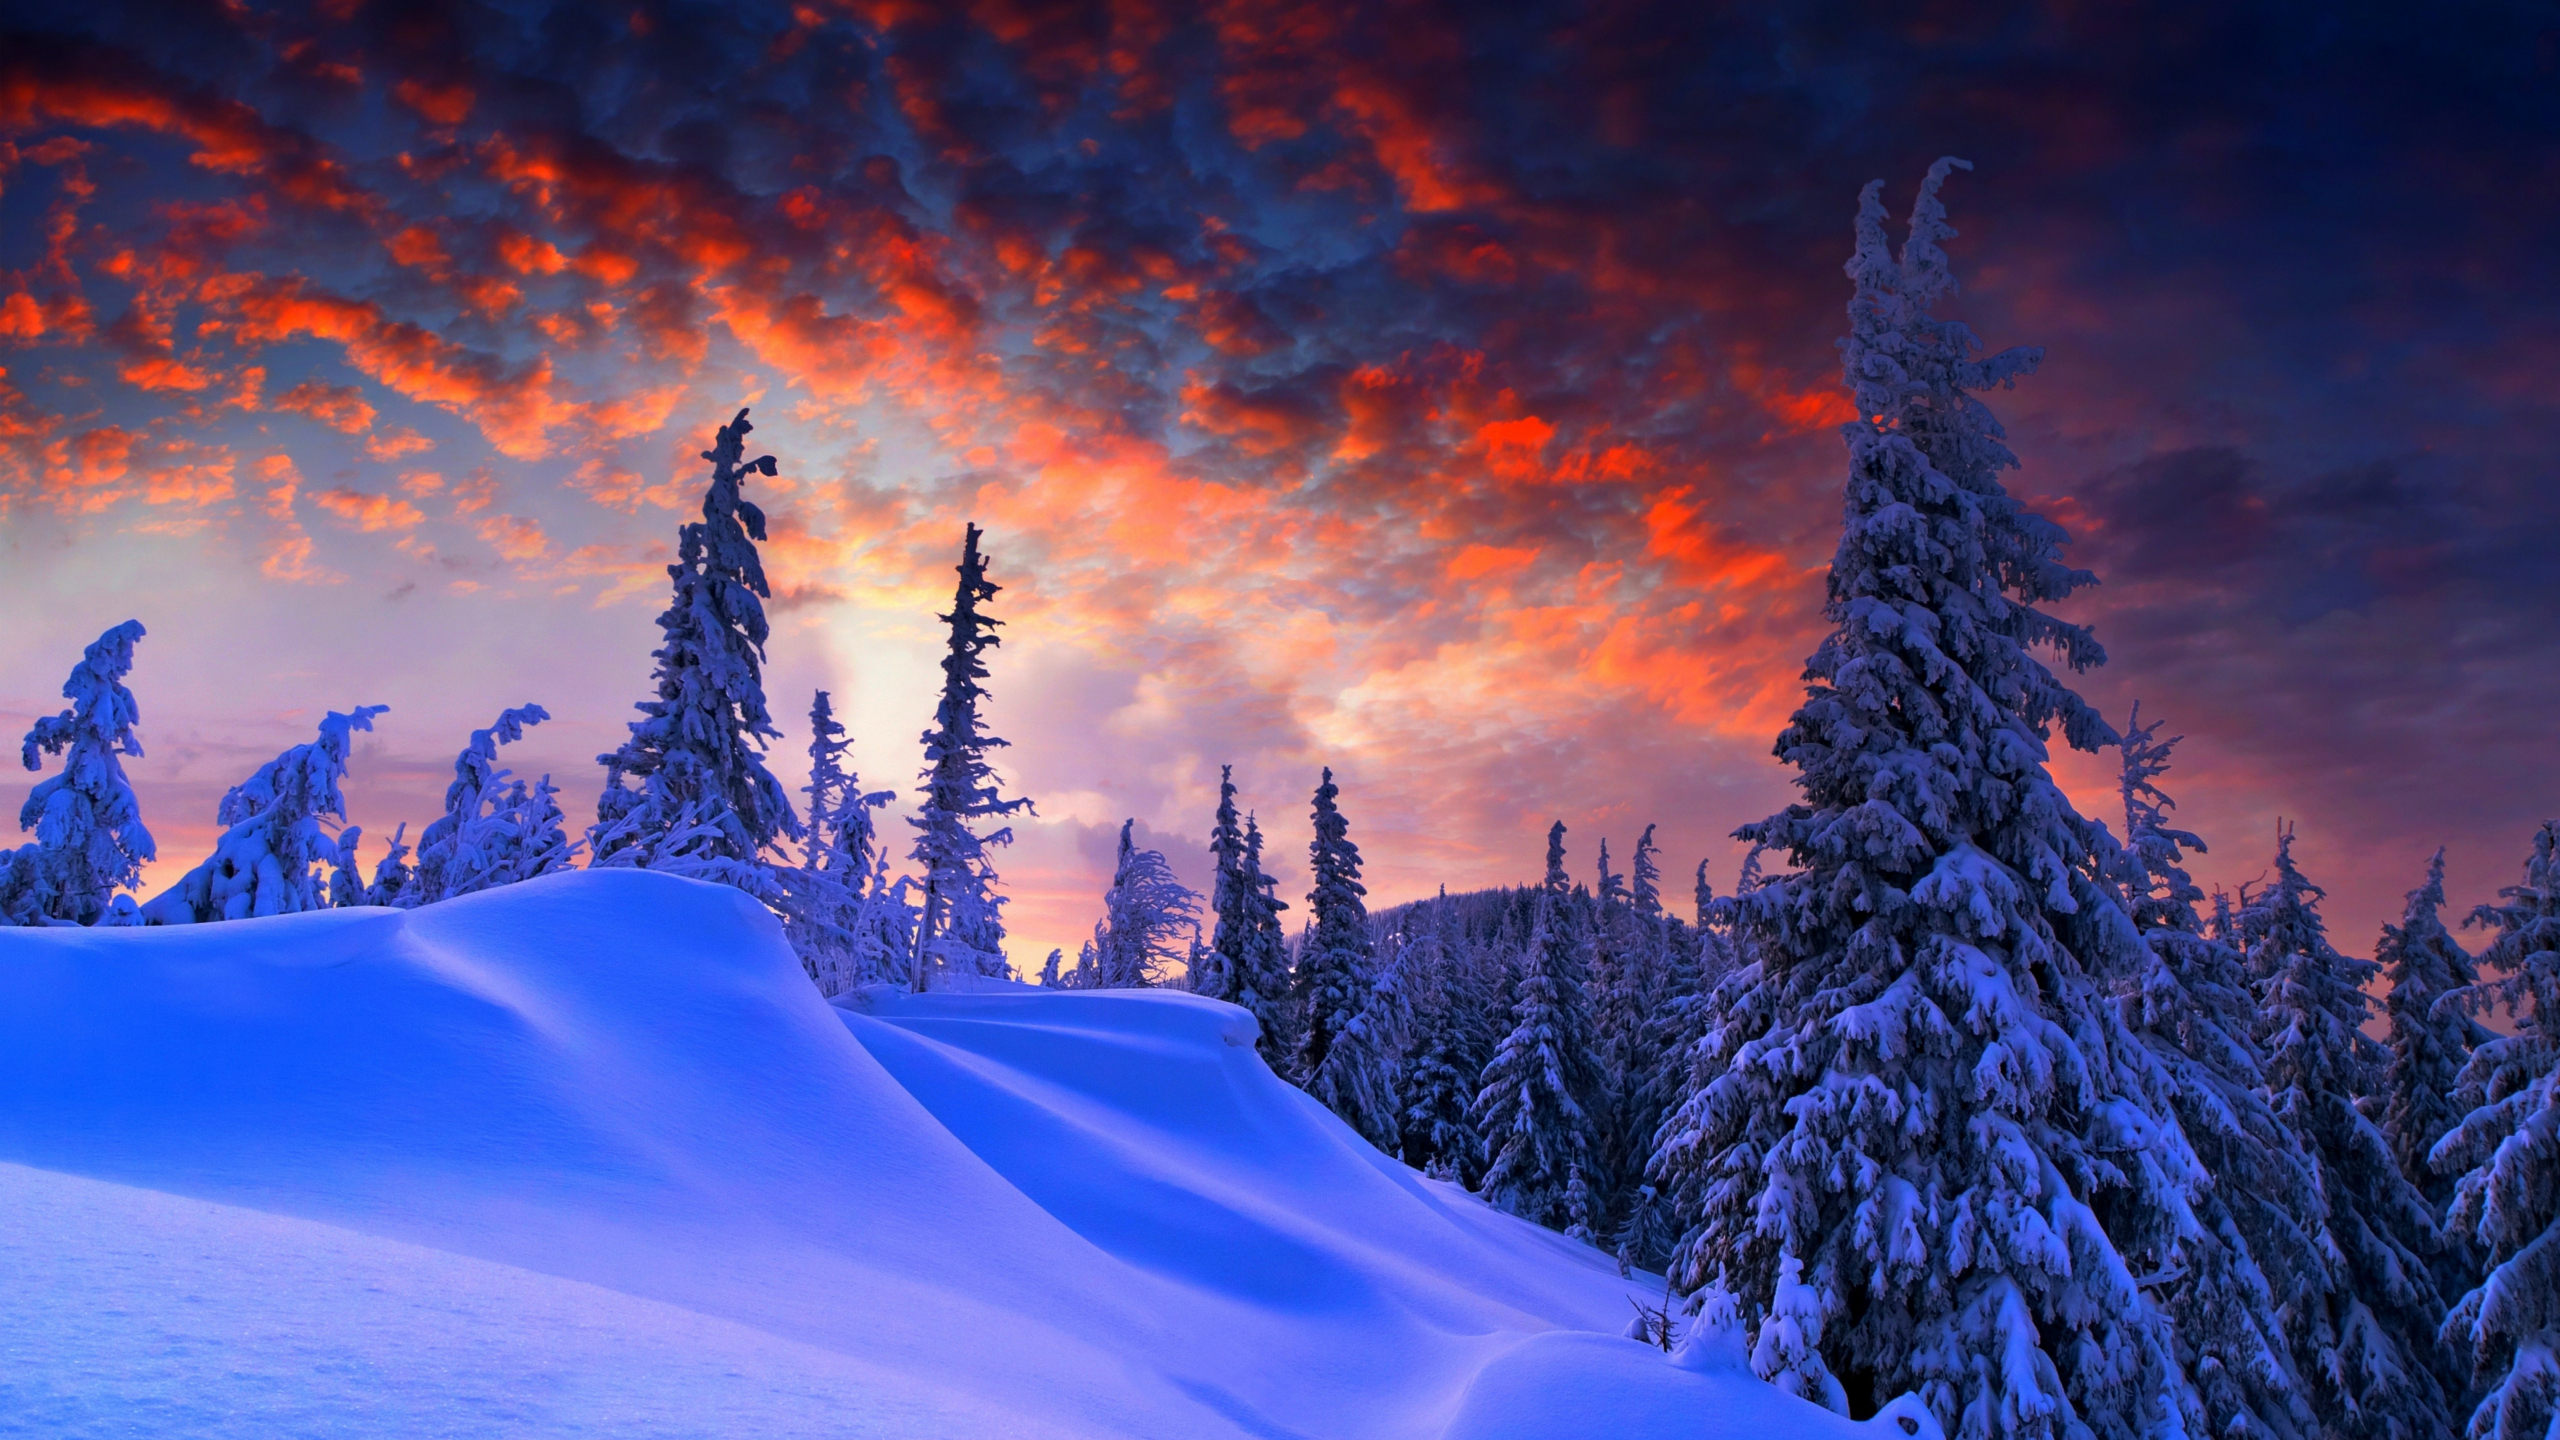 Buổi tối mùa đông là thời điểm tuyệt vời để thả mình vào không khí sâu lắng, tĩnh lặng. Hãy xem ngay hình ảnh liên quan và đắm mình trong cảnh tượng thiên nhiên tuyệt đẹp của mùa đông với những tầng sương mờ ảo.